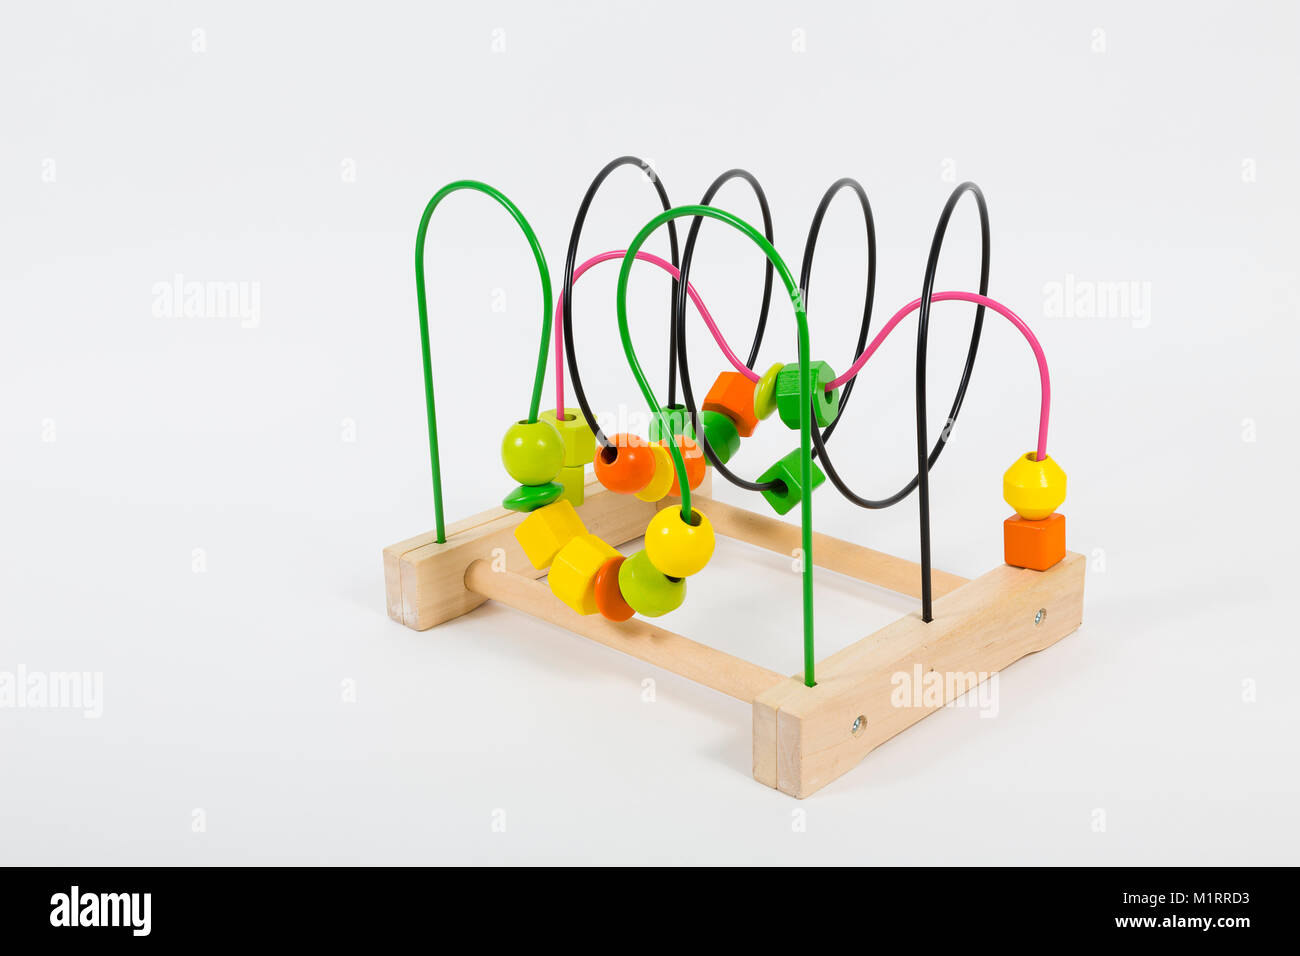 London, UK. Ikea Mula bead roller-coaster toy on white background Stock  Photo - Alamy